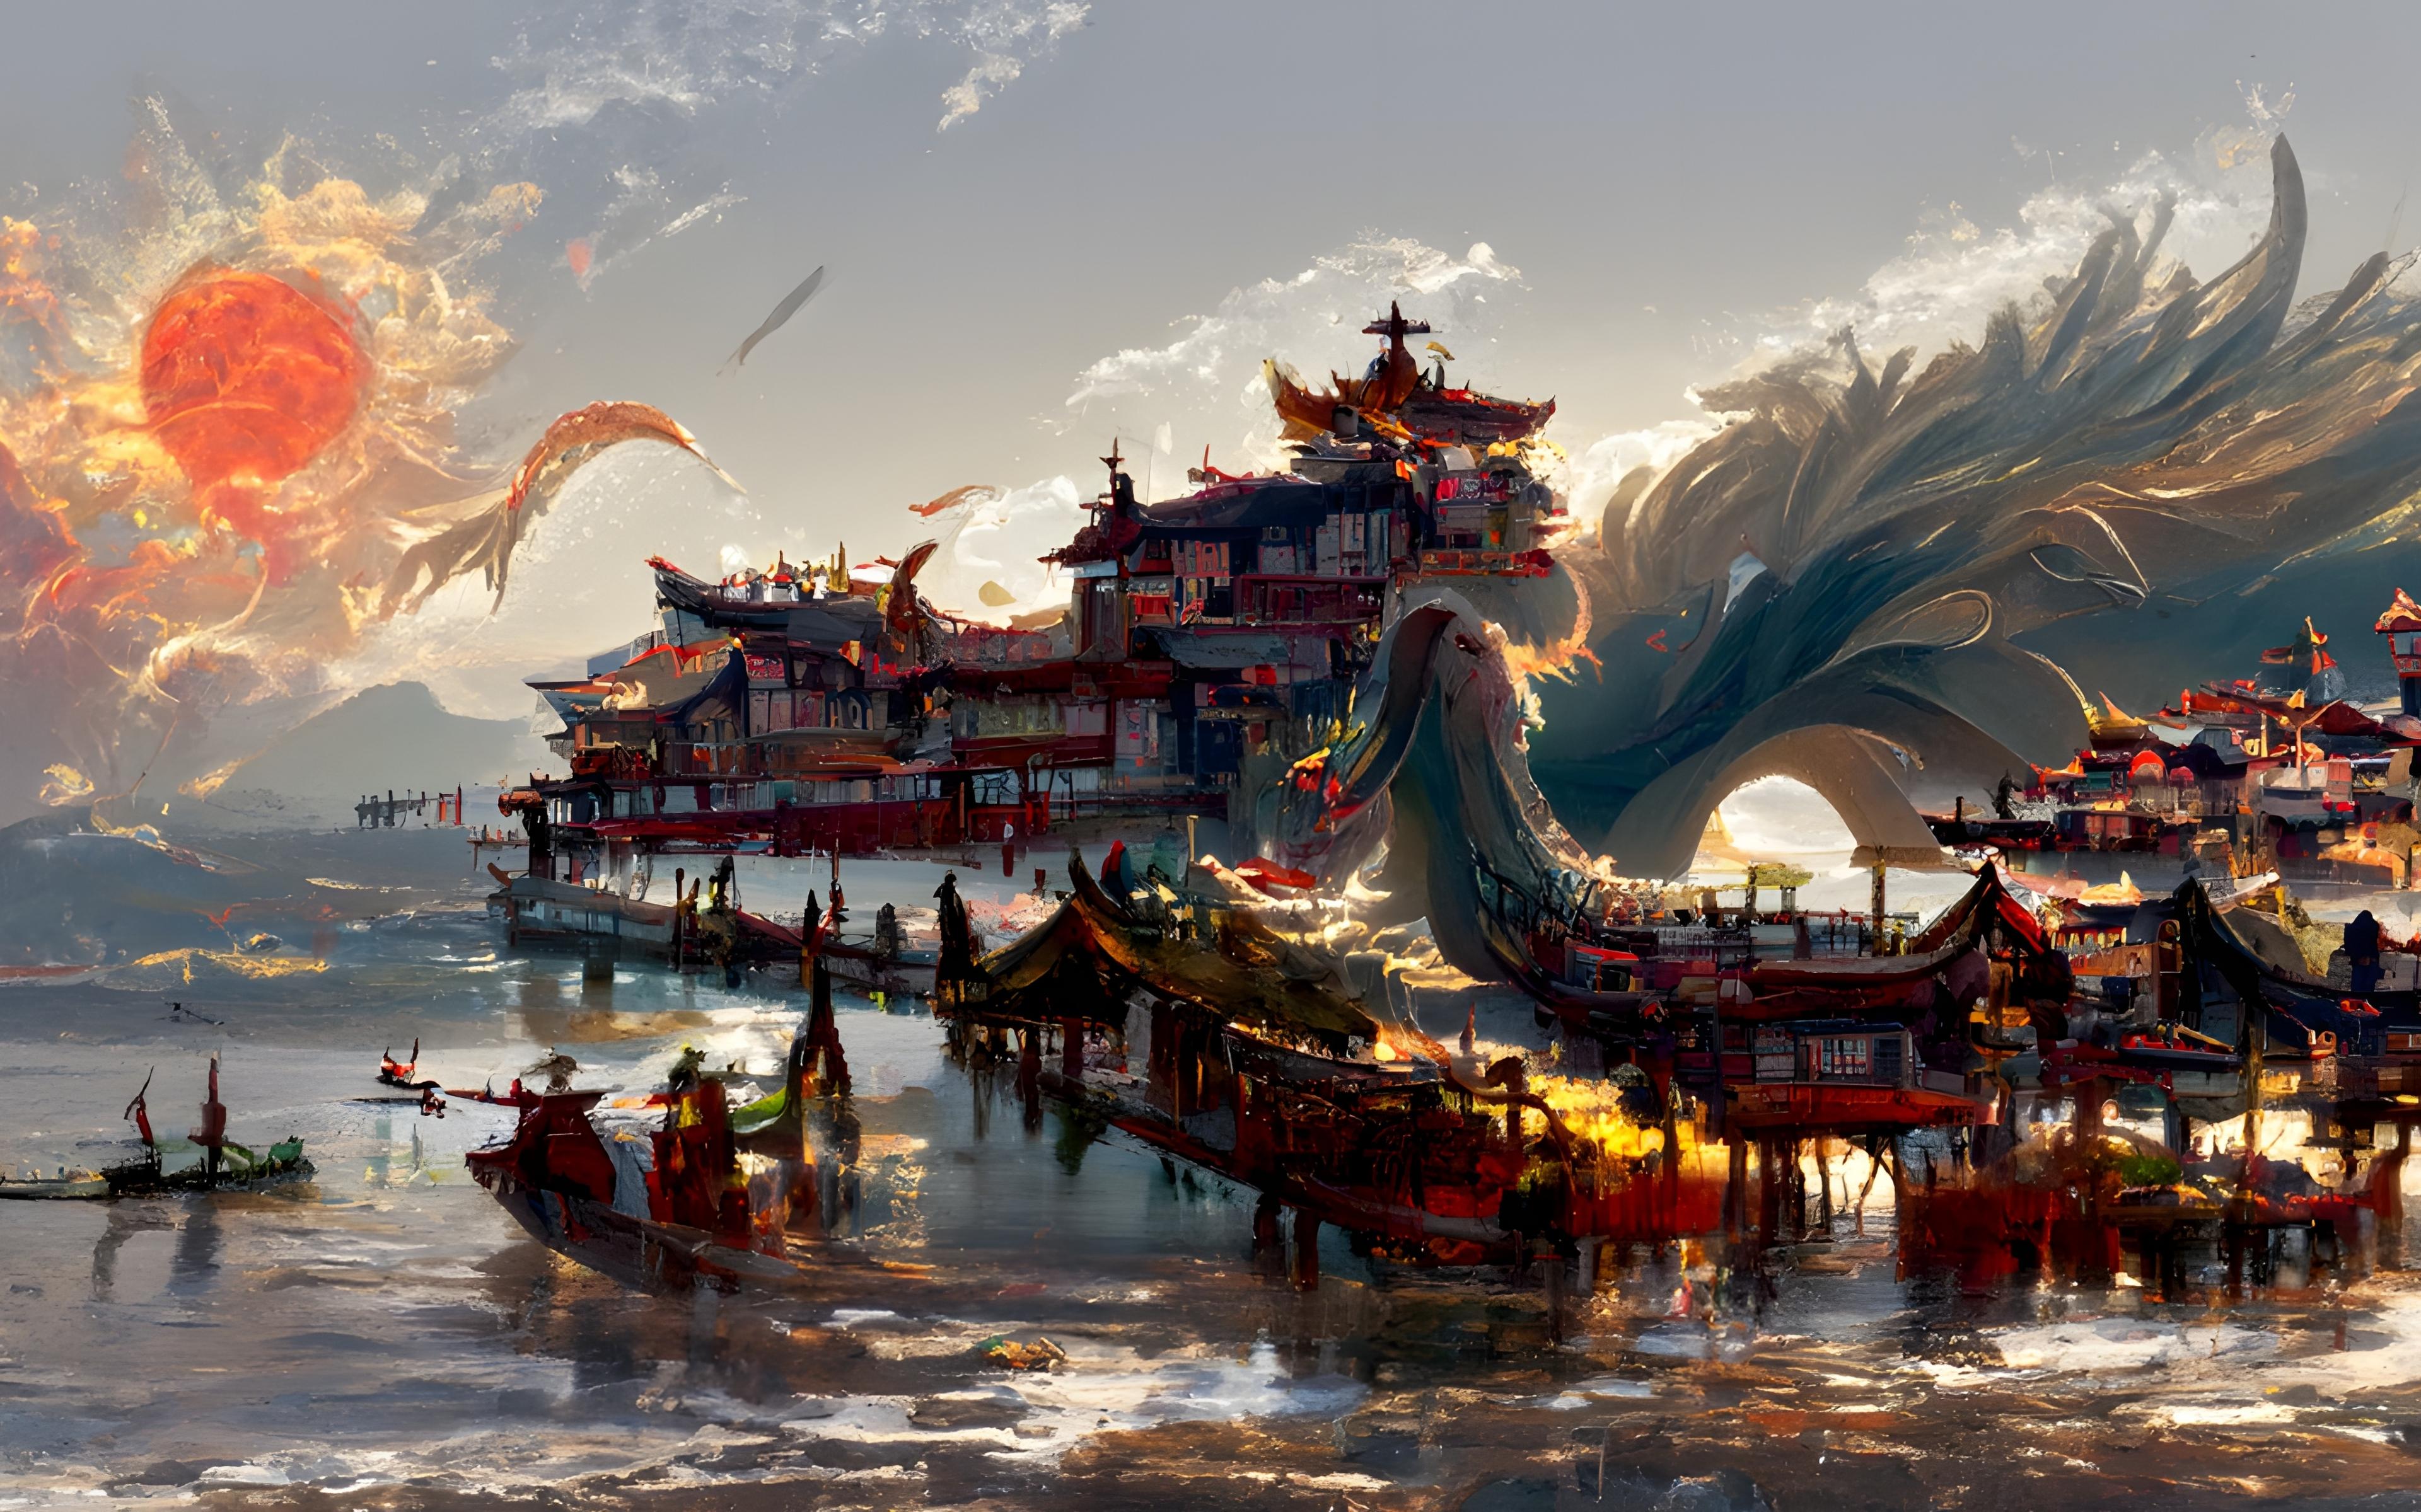 Wallpaper China S Ancient Town Dragon Fantasy